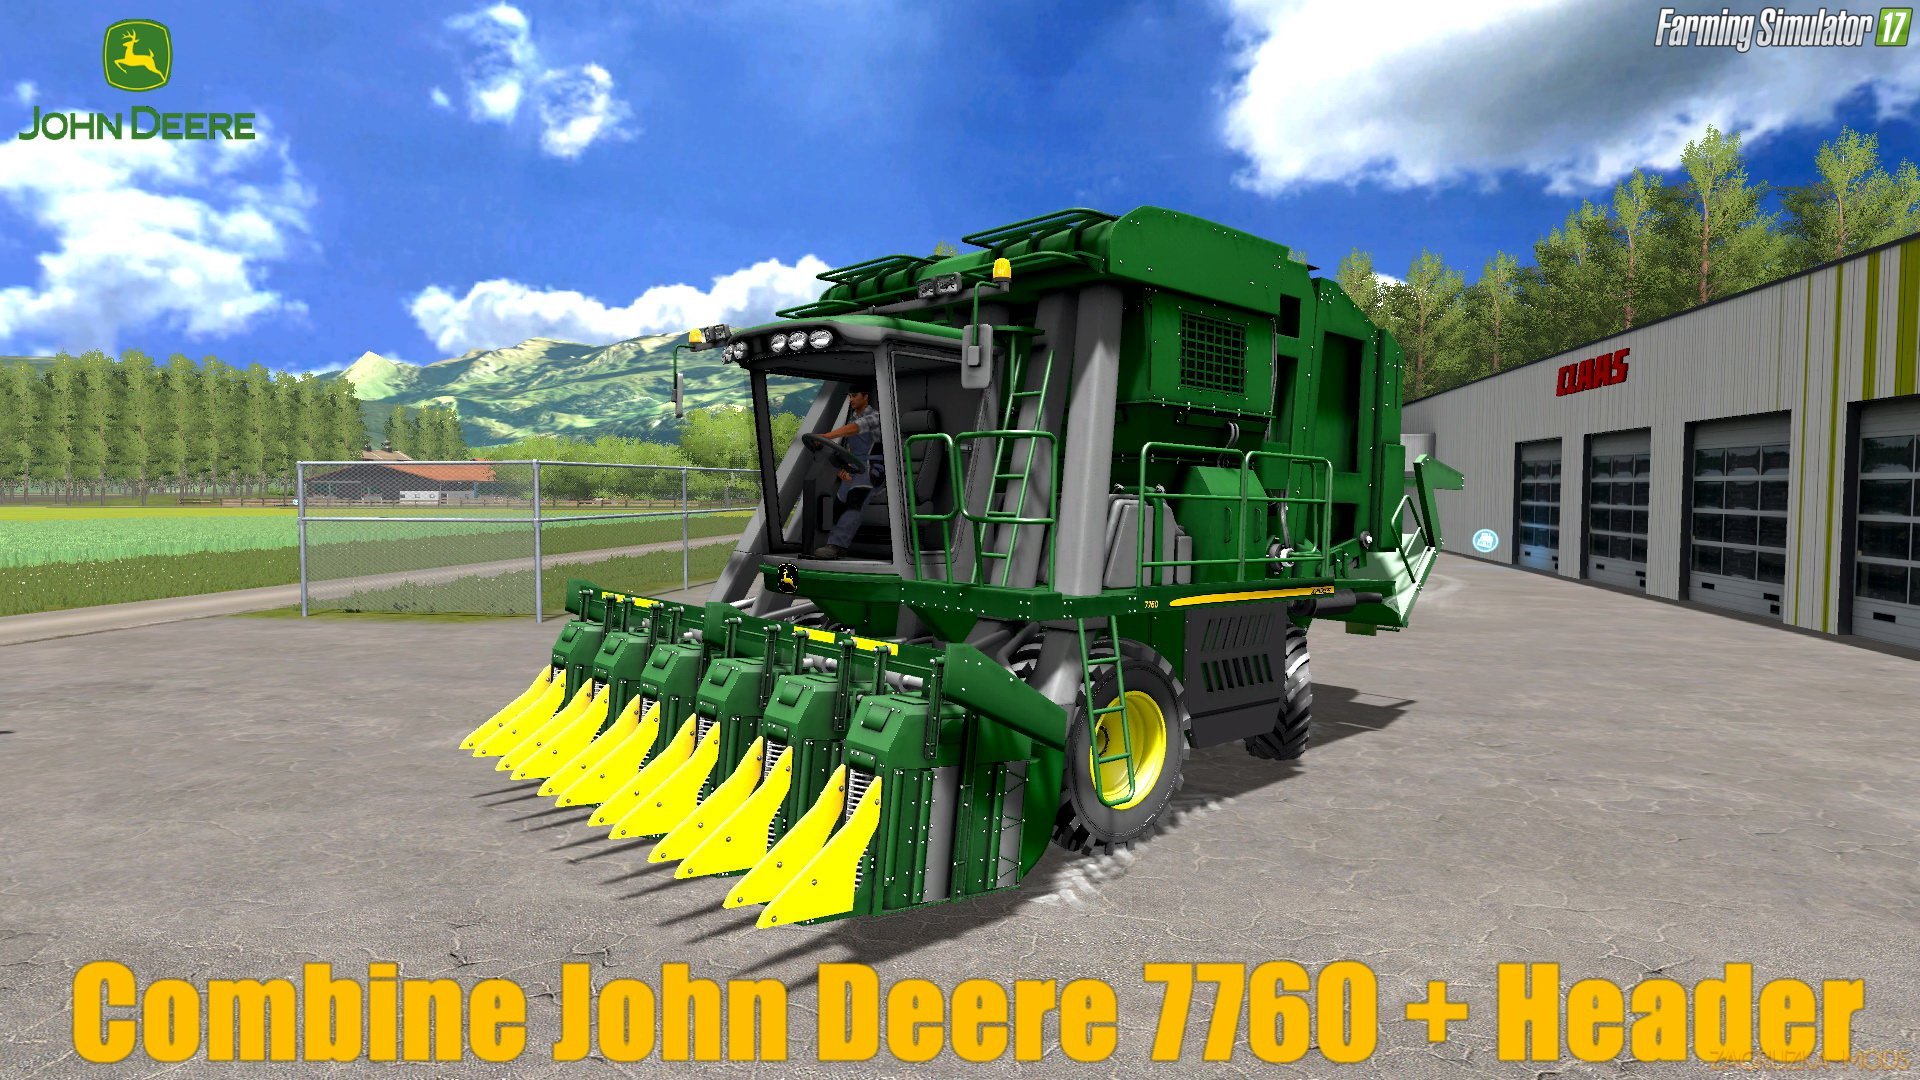 John Deere 7760 + Header v1.0 for FS 17